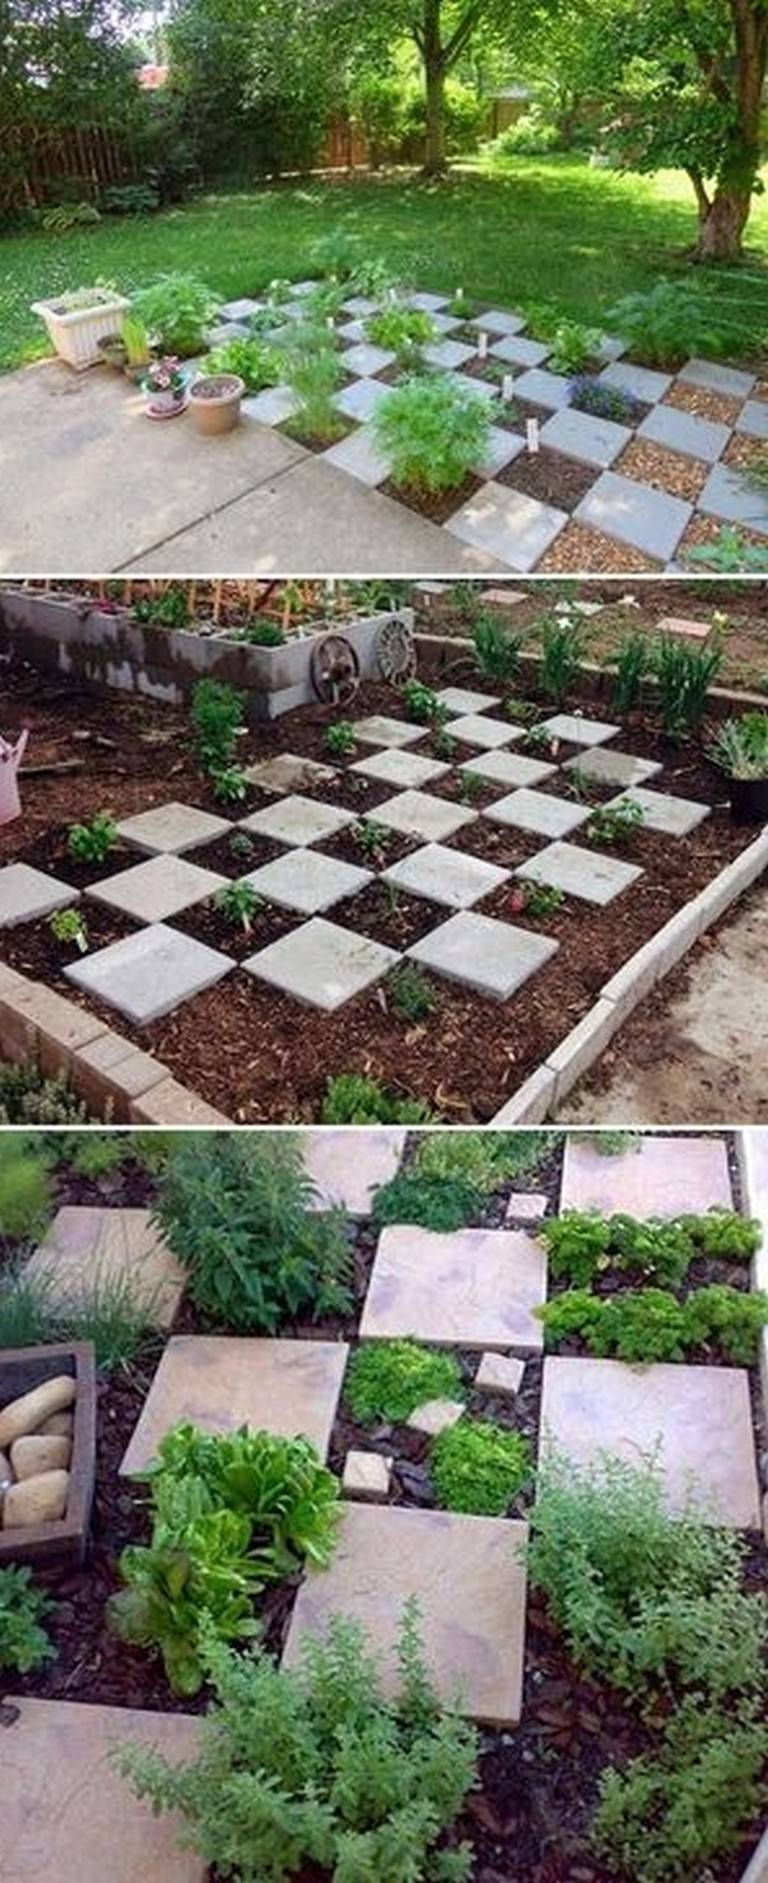 A Vegetable Garden World